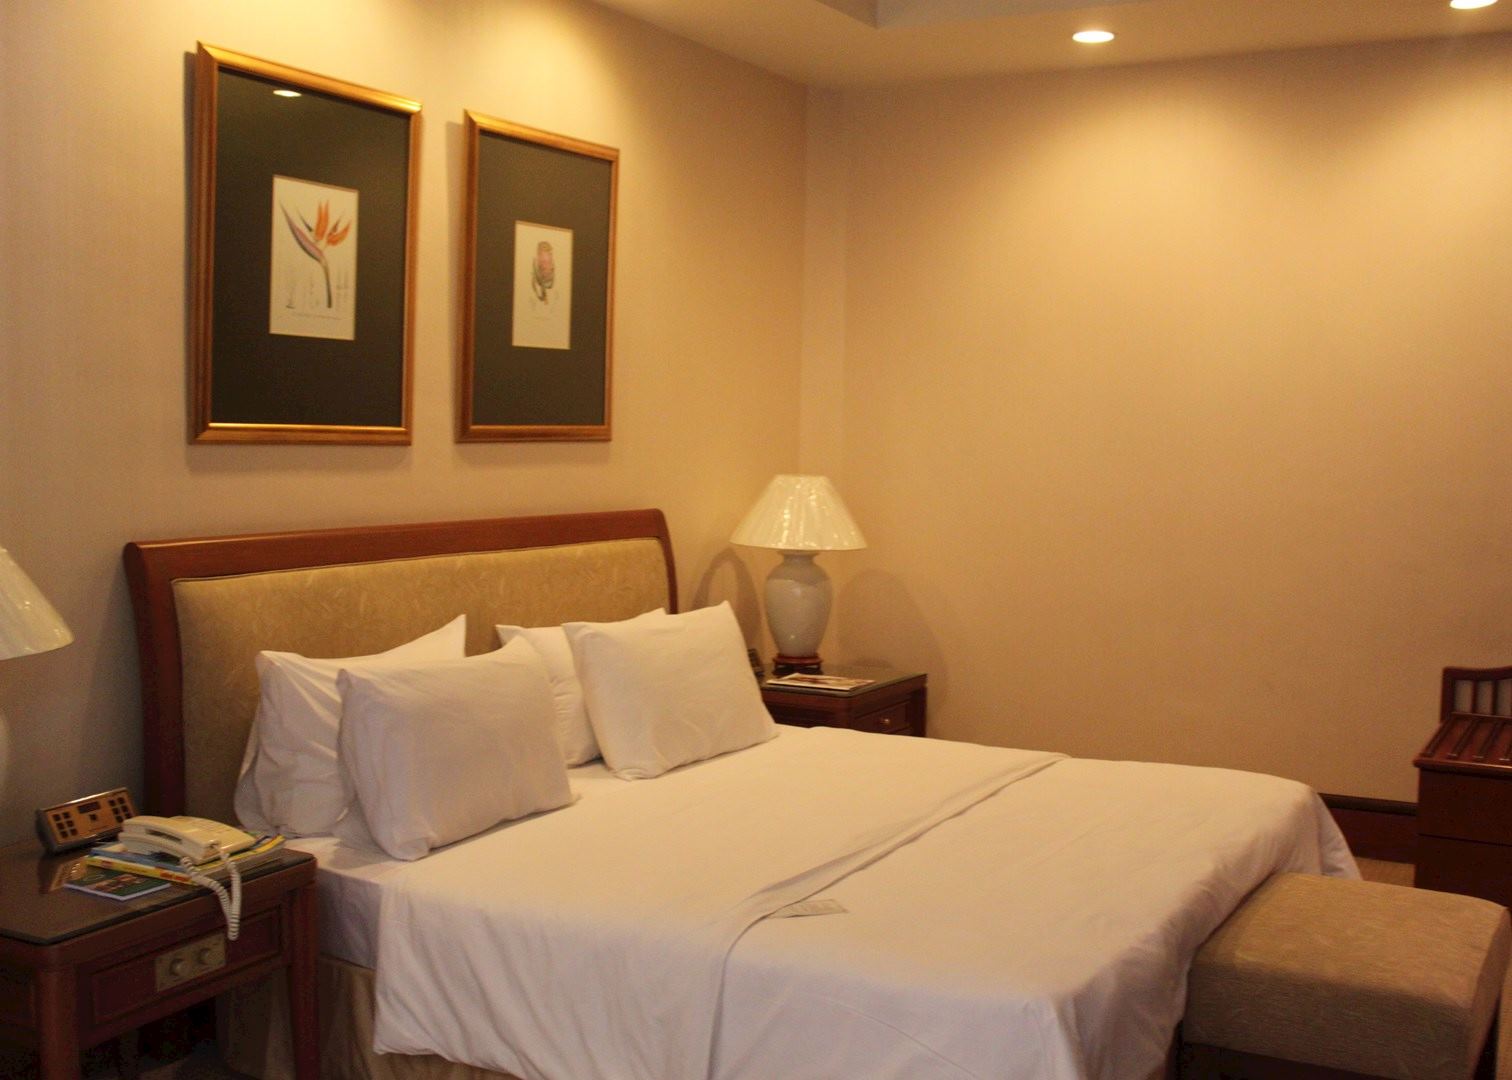 Jesselton Hotel | Hotels in Kota Kinabalu | Audley Travel